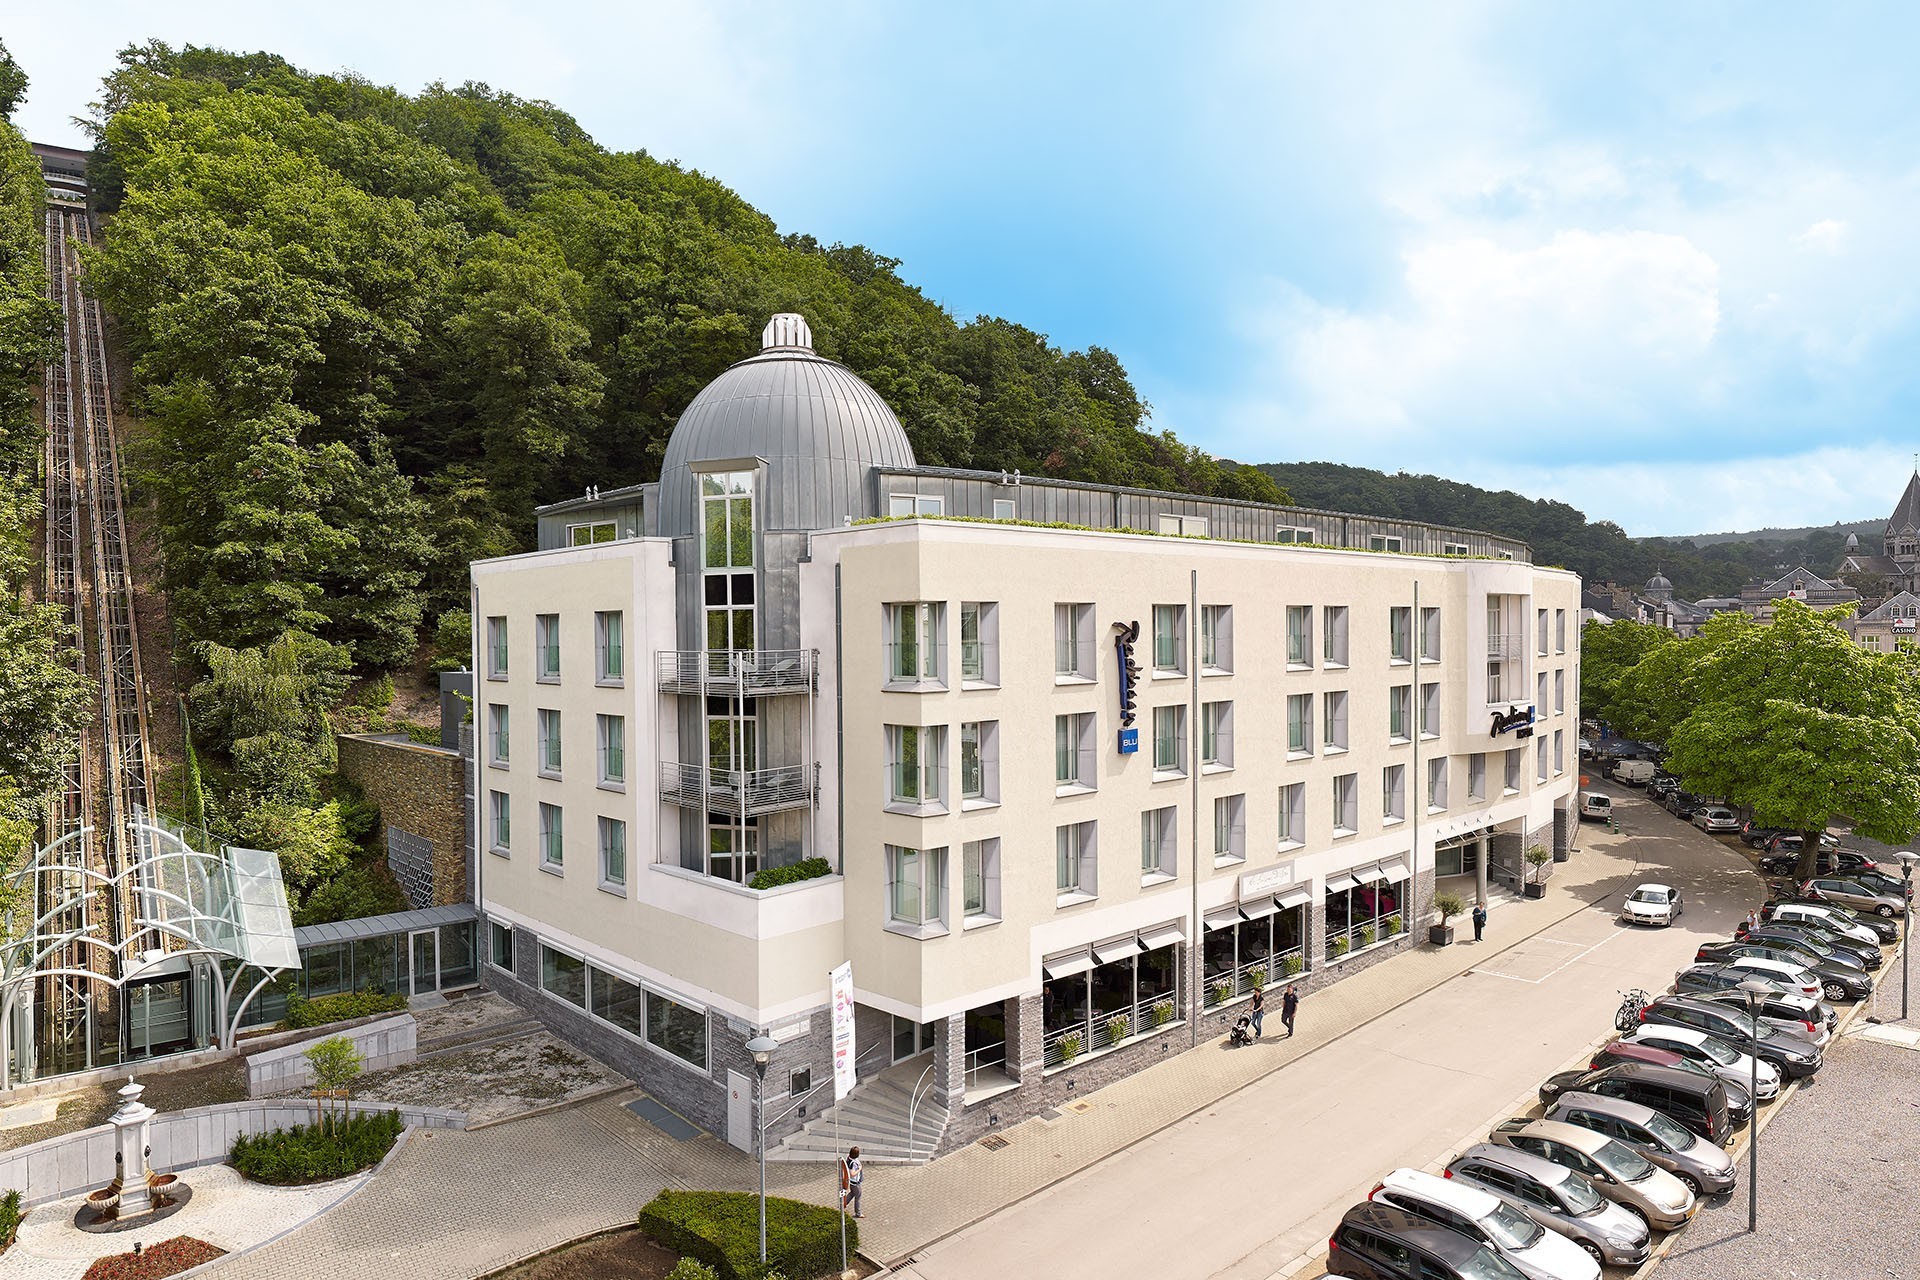 Radisson Blu Palace Hotel Spa